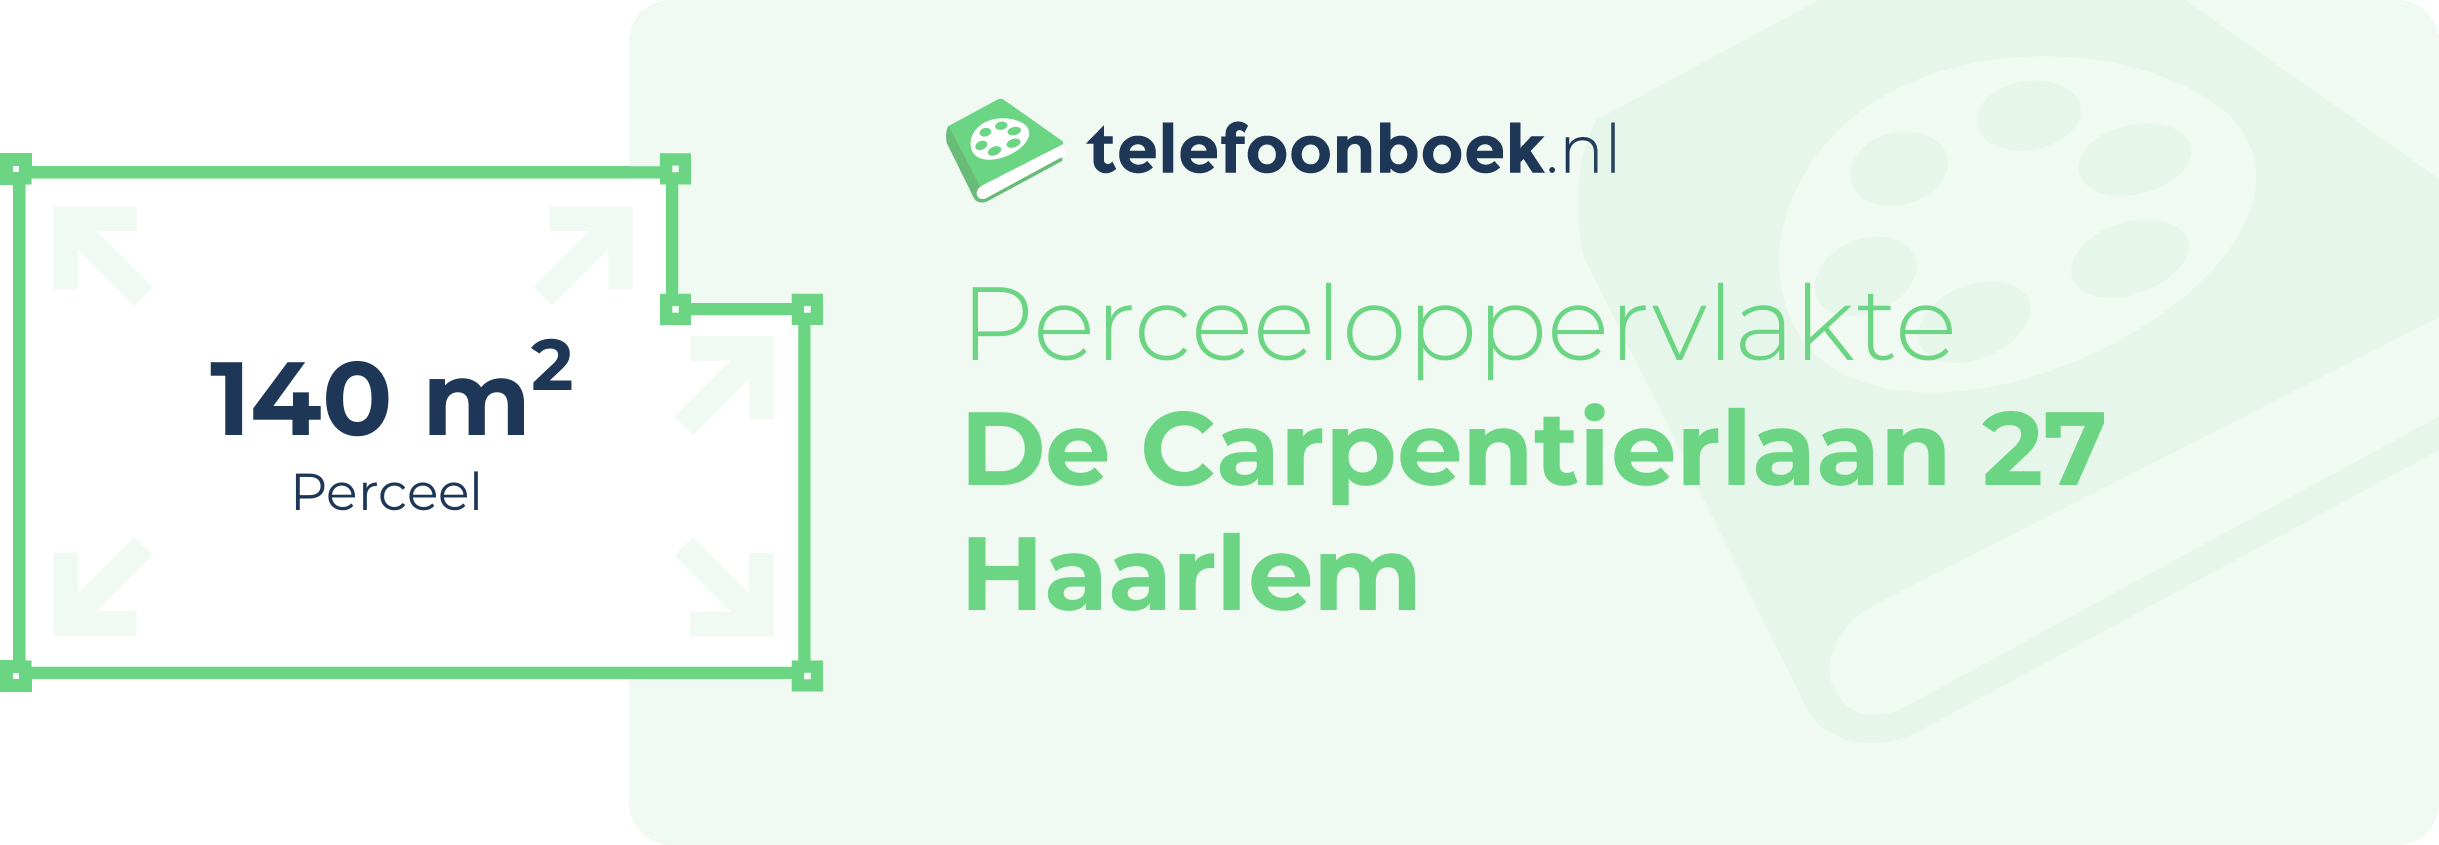 Perceeloppervlakte De Carpentierlaan 27 Haarlem